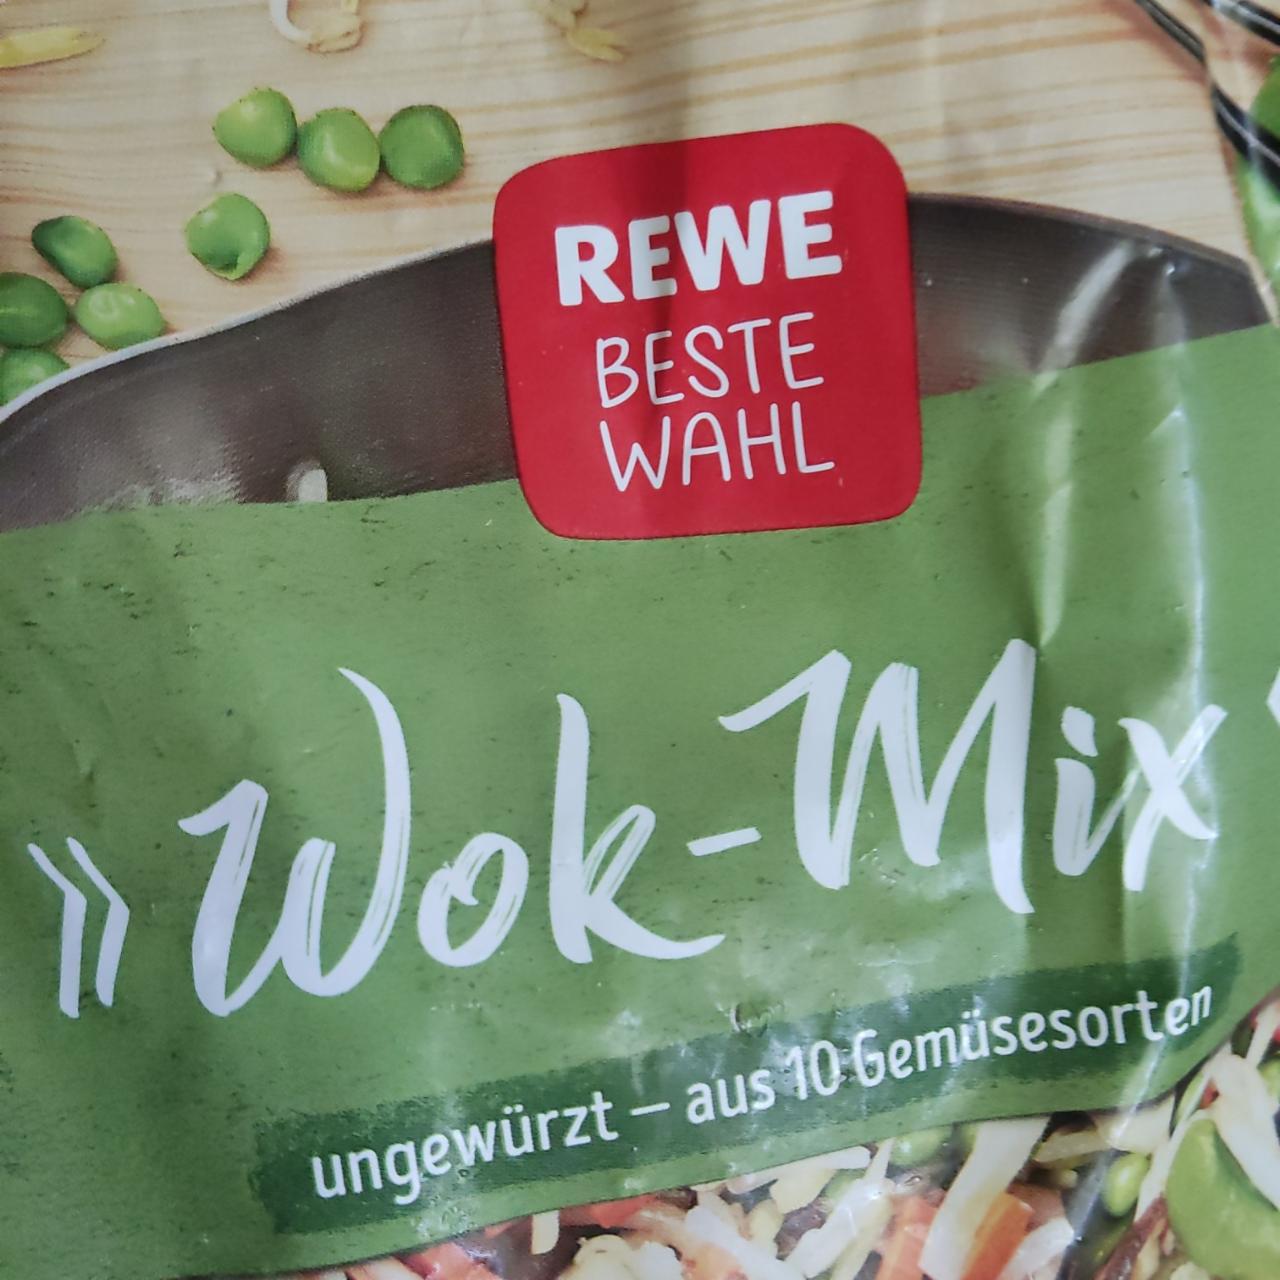 Фото - Wok-mix овощи Rewe